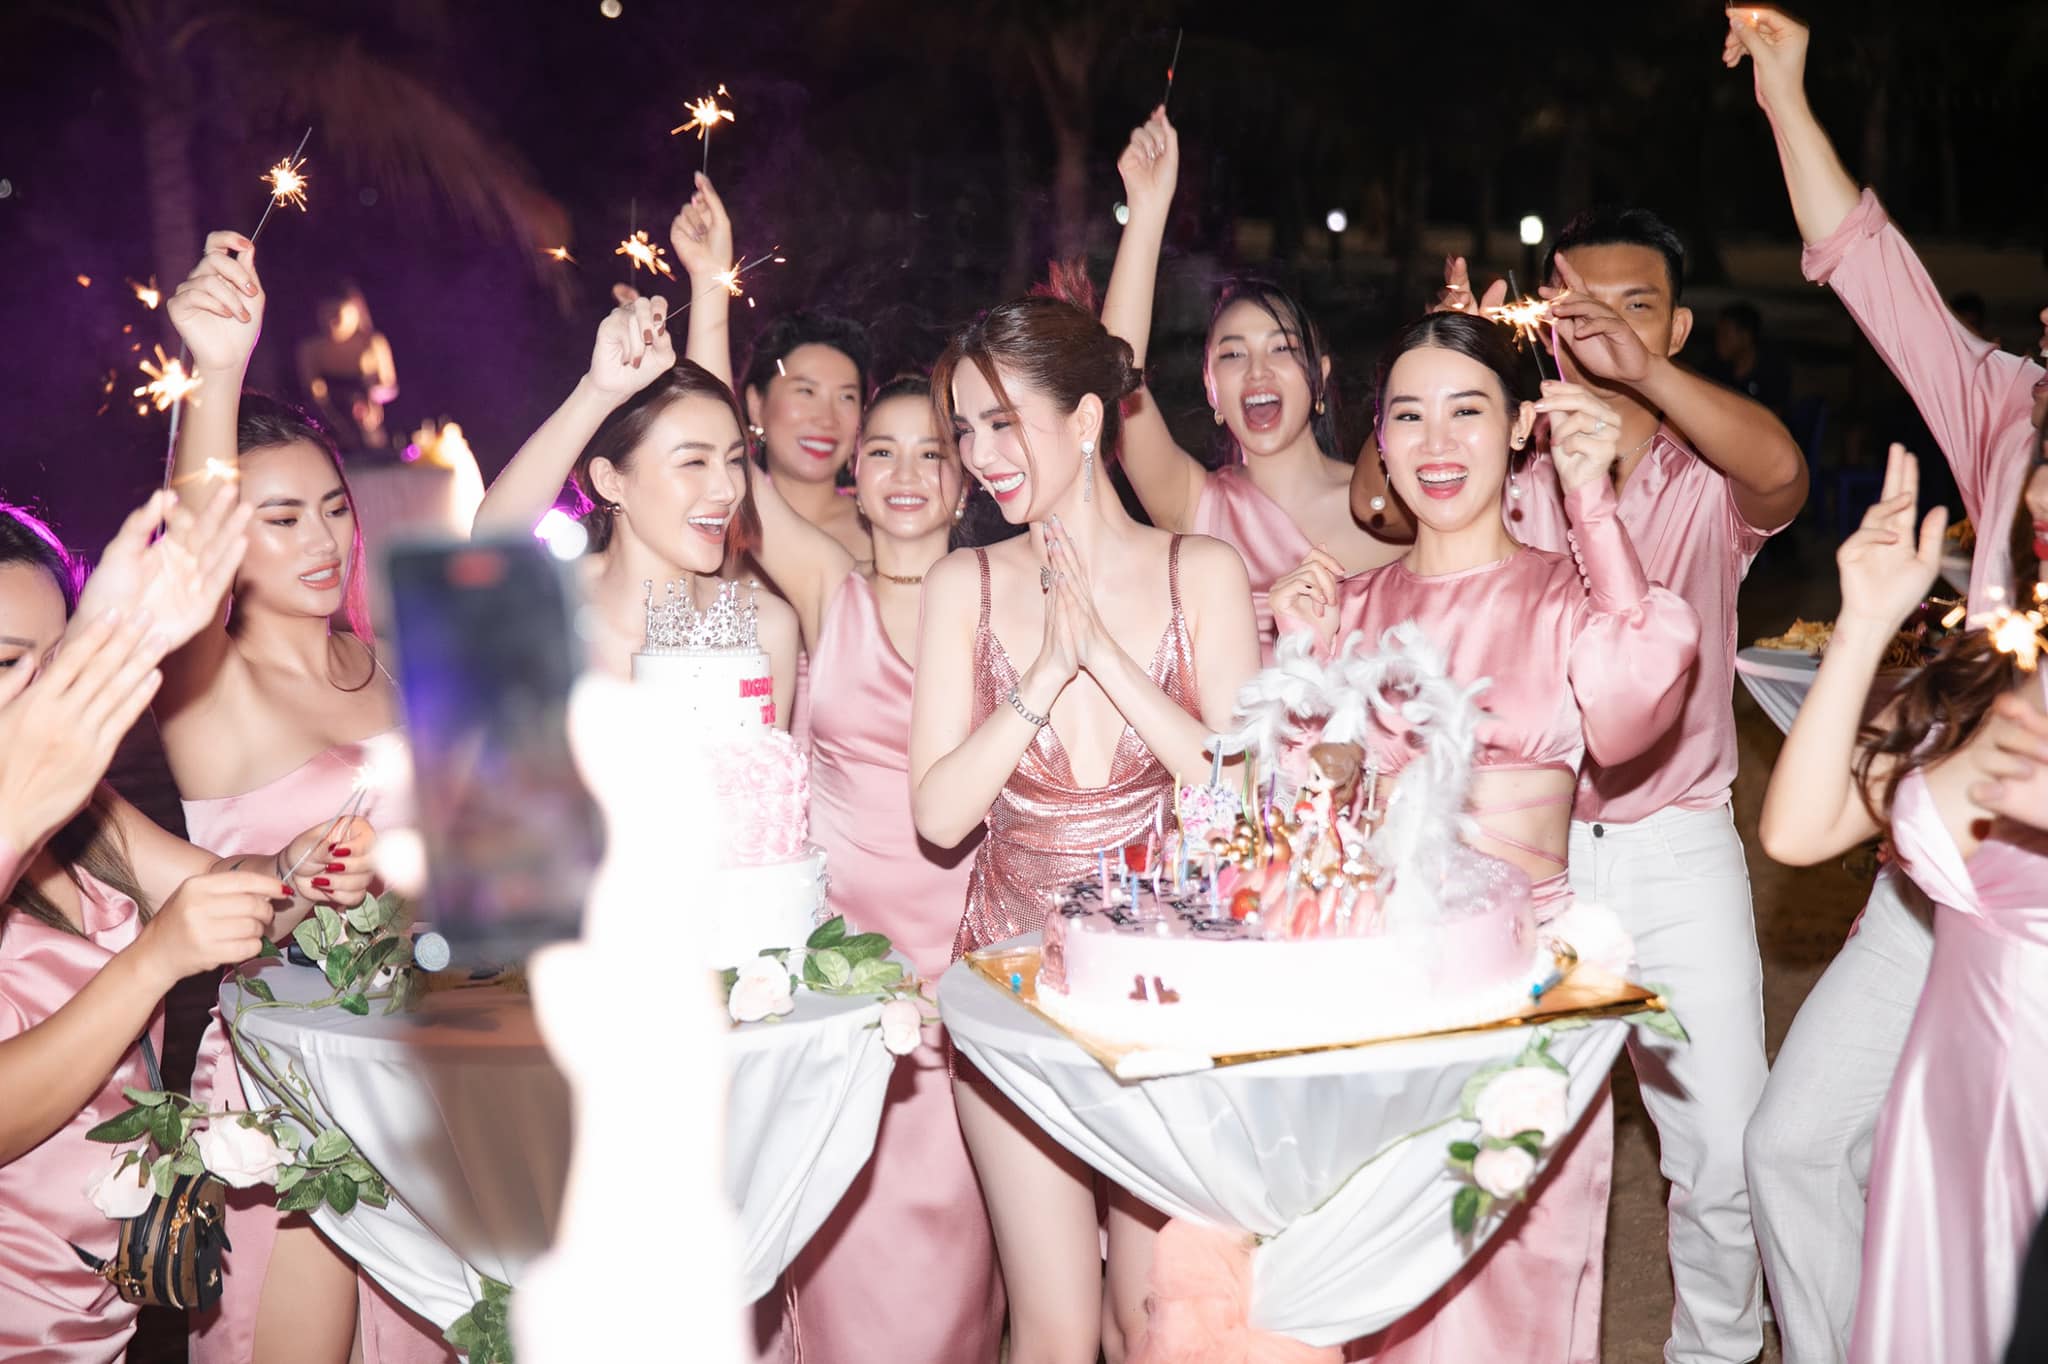 Ngọc Trinh xả mình đêm sinh nhật Hôn bạn gái nhiệt tình trong buổi tiệc  phát ngôn nhạy cảm  Showbiz Việt  Sao Việt  VGT TV